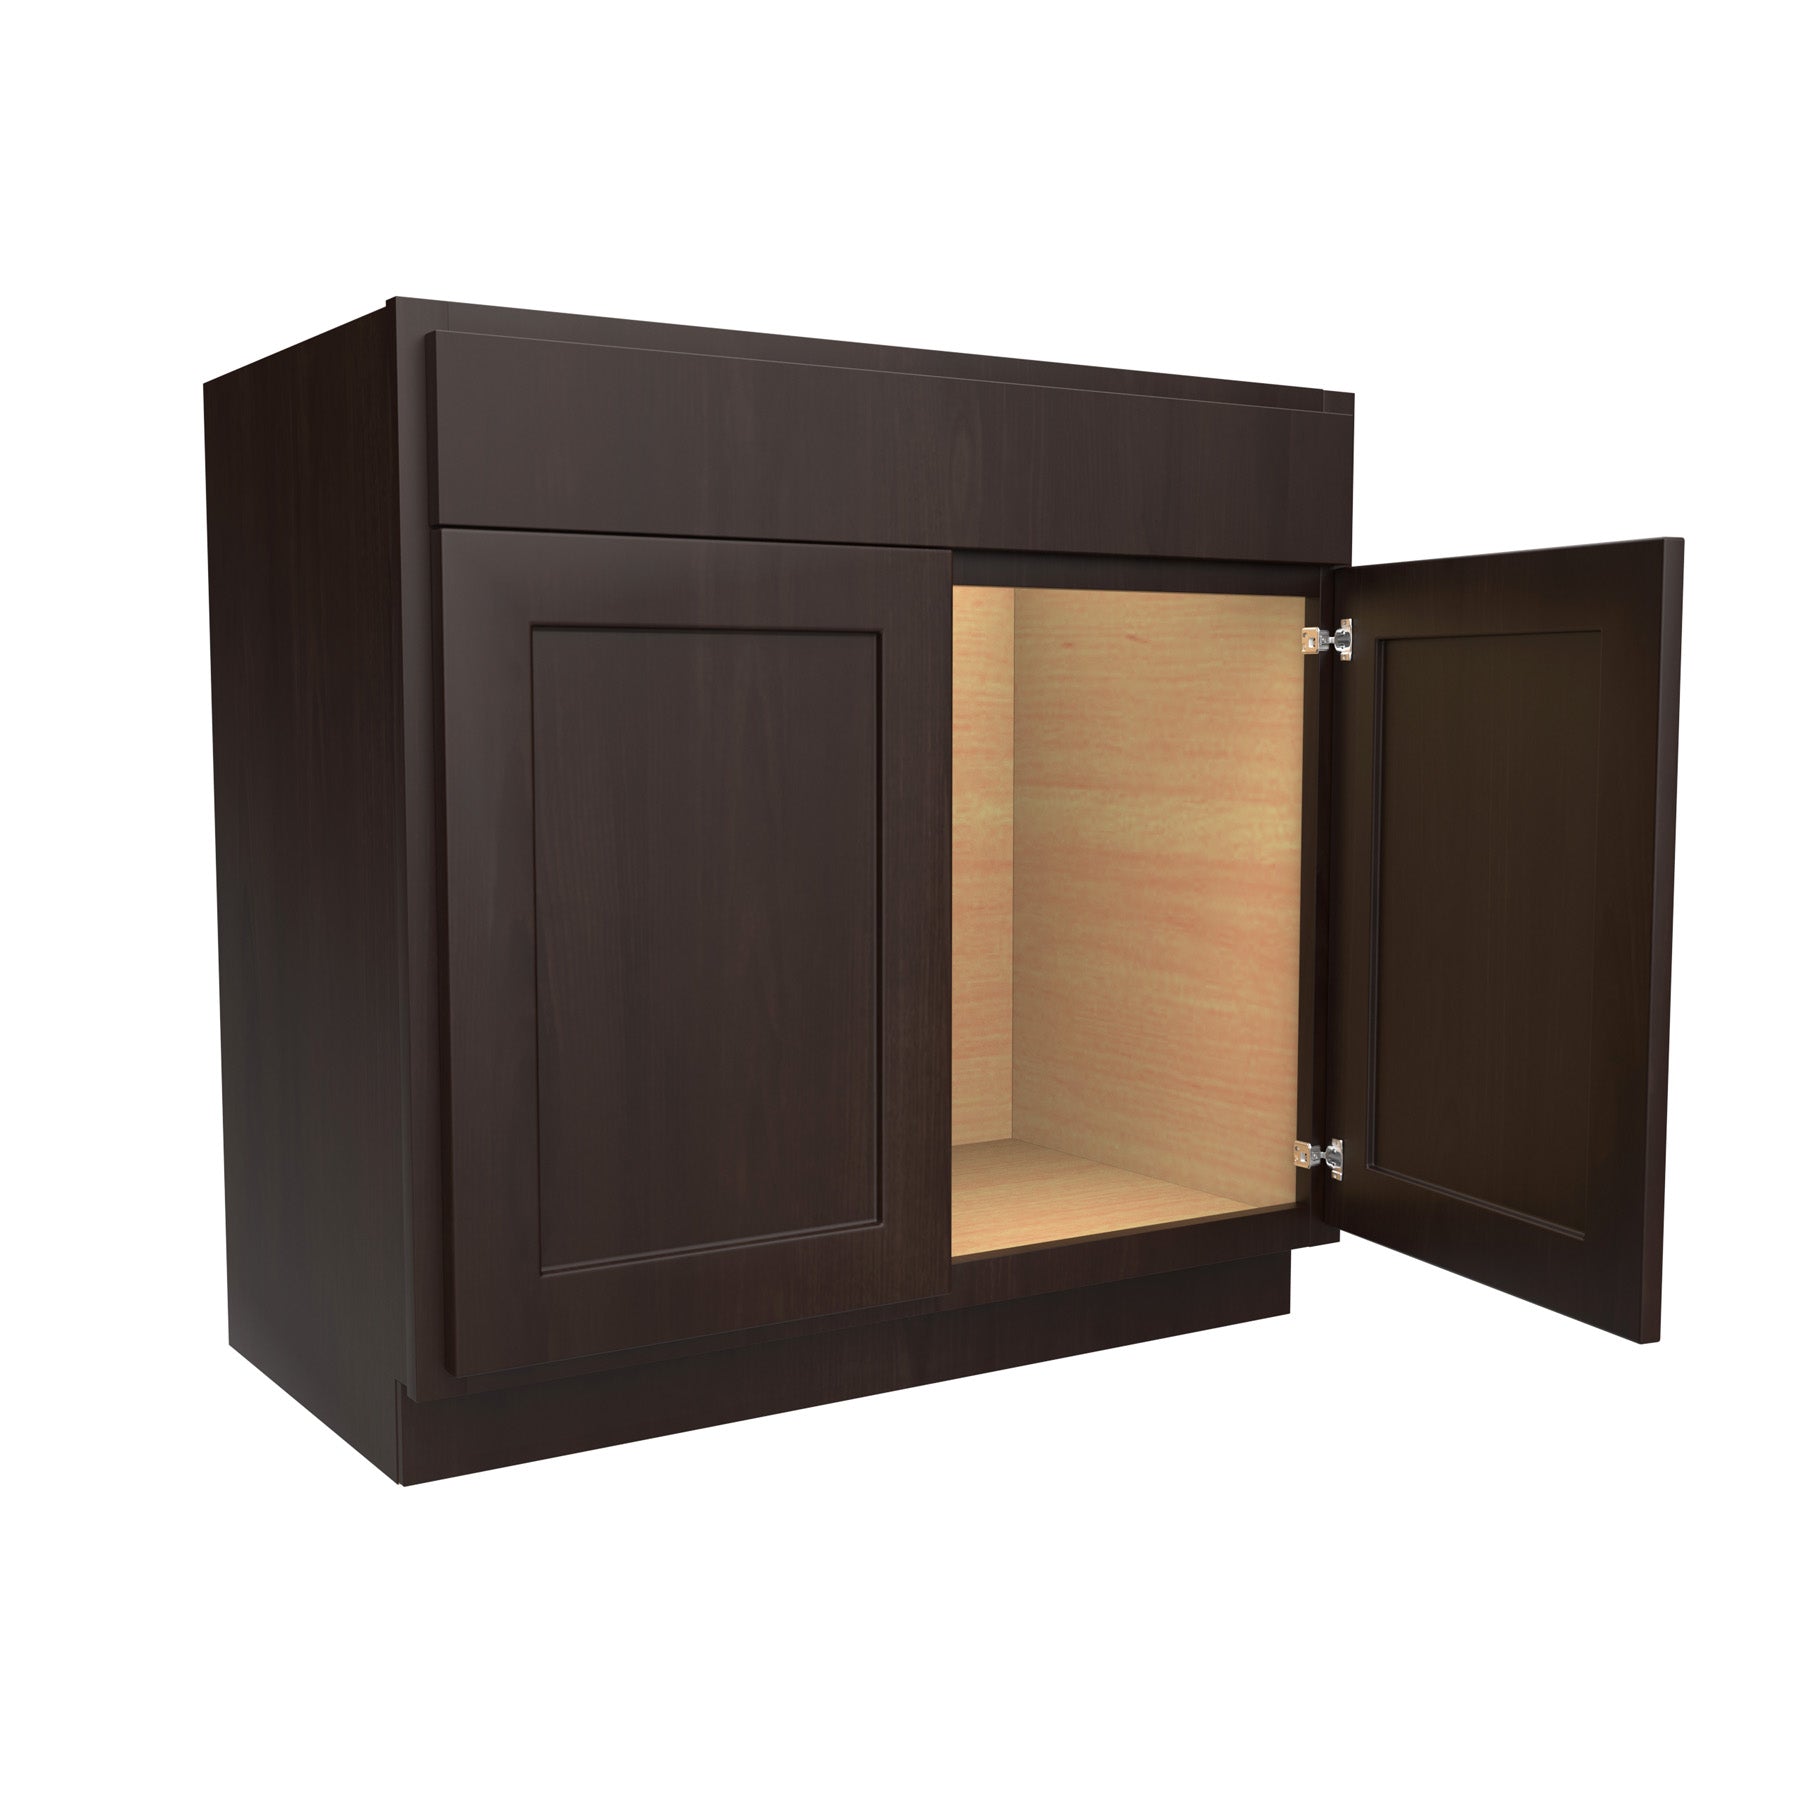 Luxor Espresso - Double Door Vanity Sink Base Cabinet | 36"W x 34.5"H x 21"D